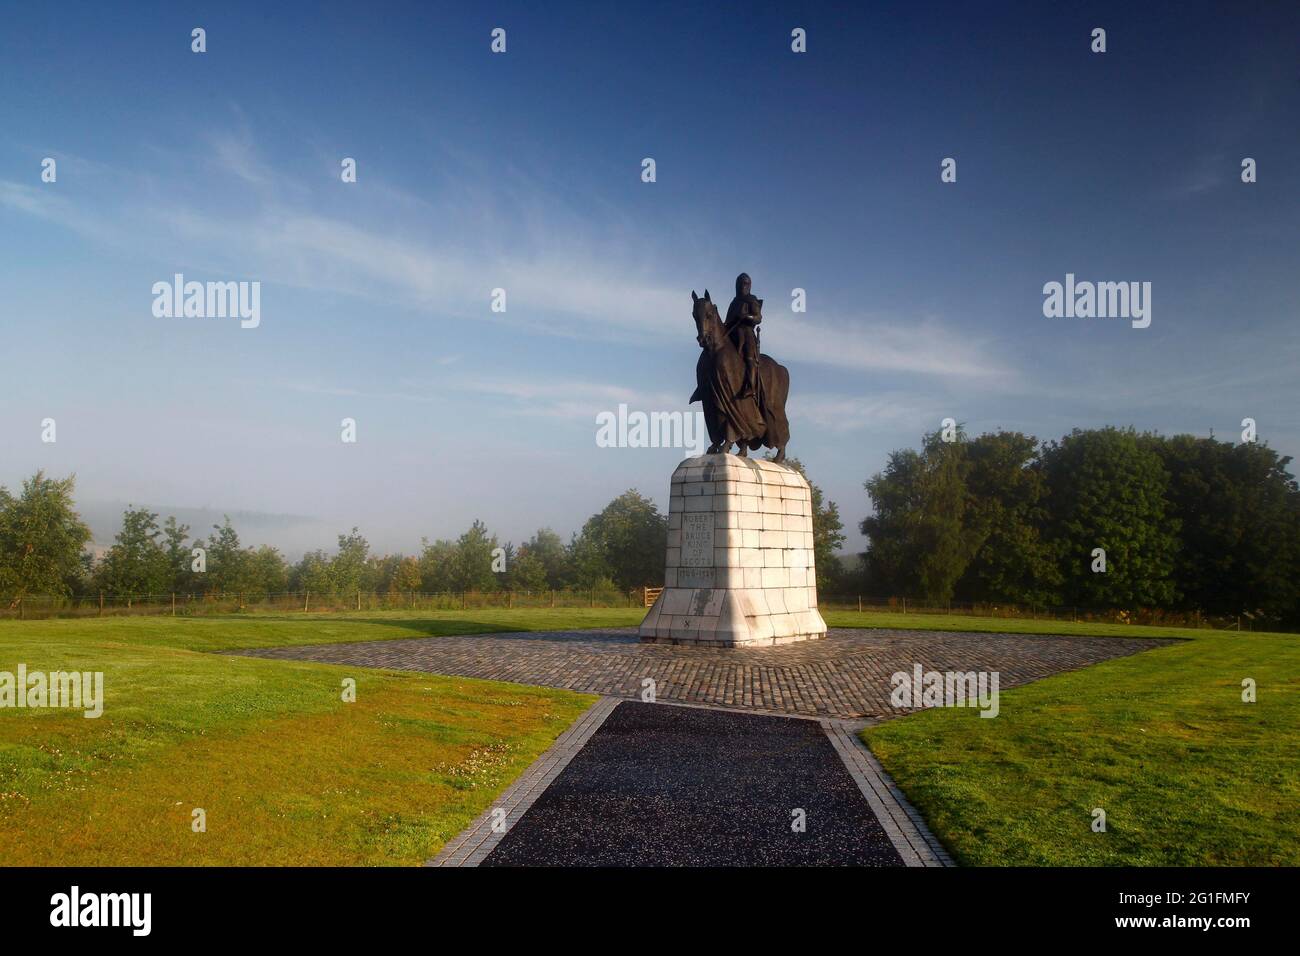 Bataille de Bannockburn, Grande-Bretagne, bataille de Bannockburn, Statue de Robert the Bruce, Robert I, Roi d'Écosse, Grande-Bretagne, champ de bataille Banque D'Images